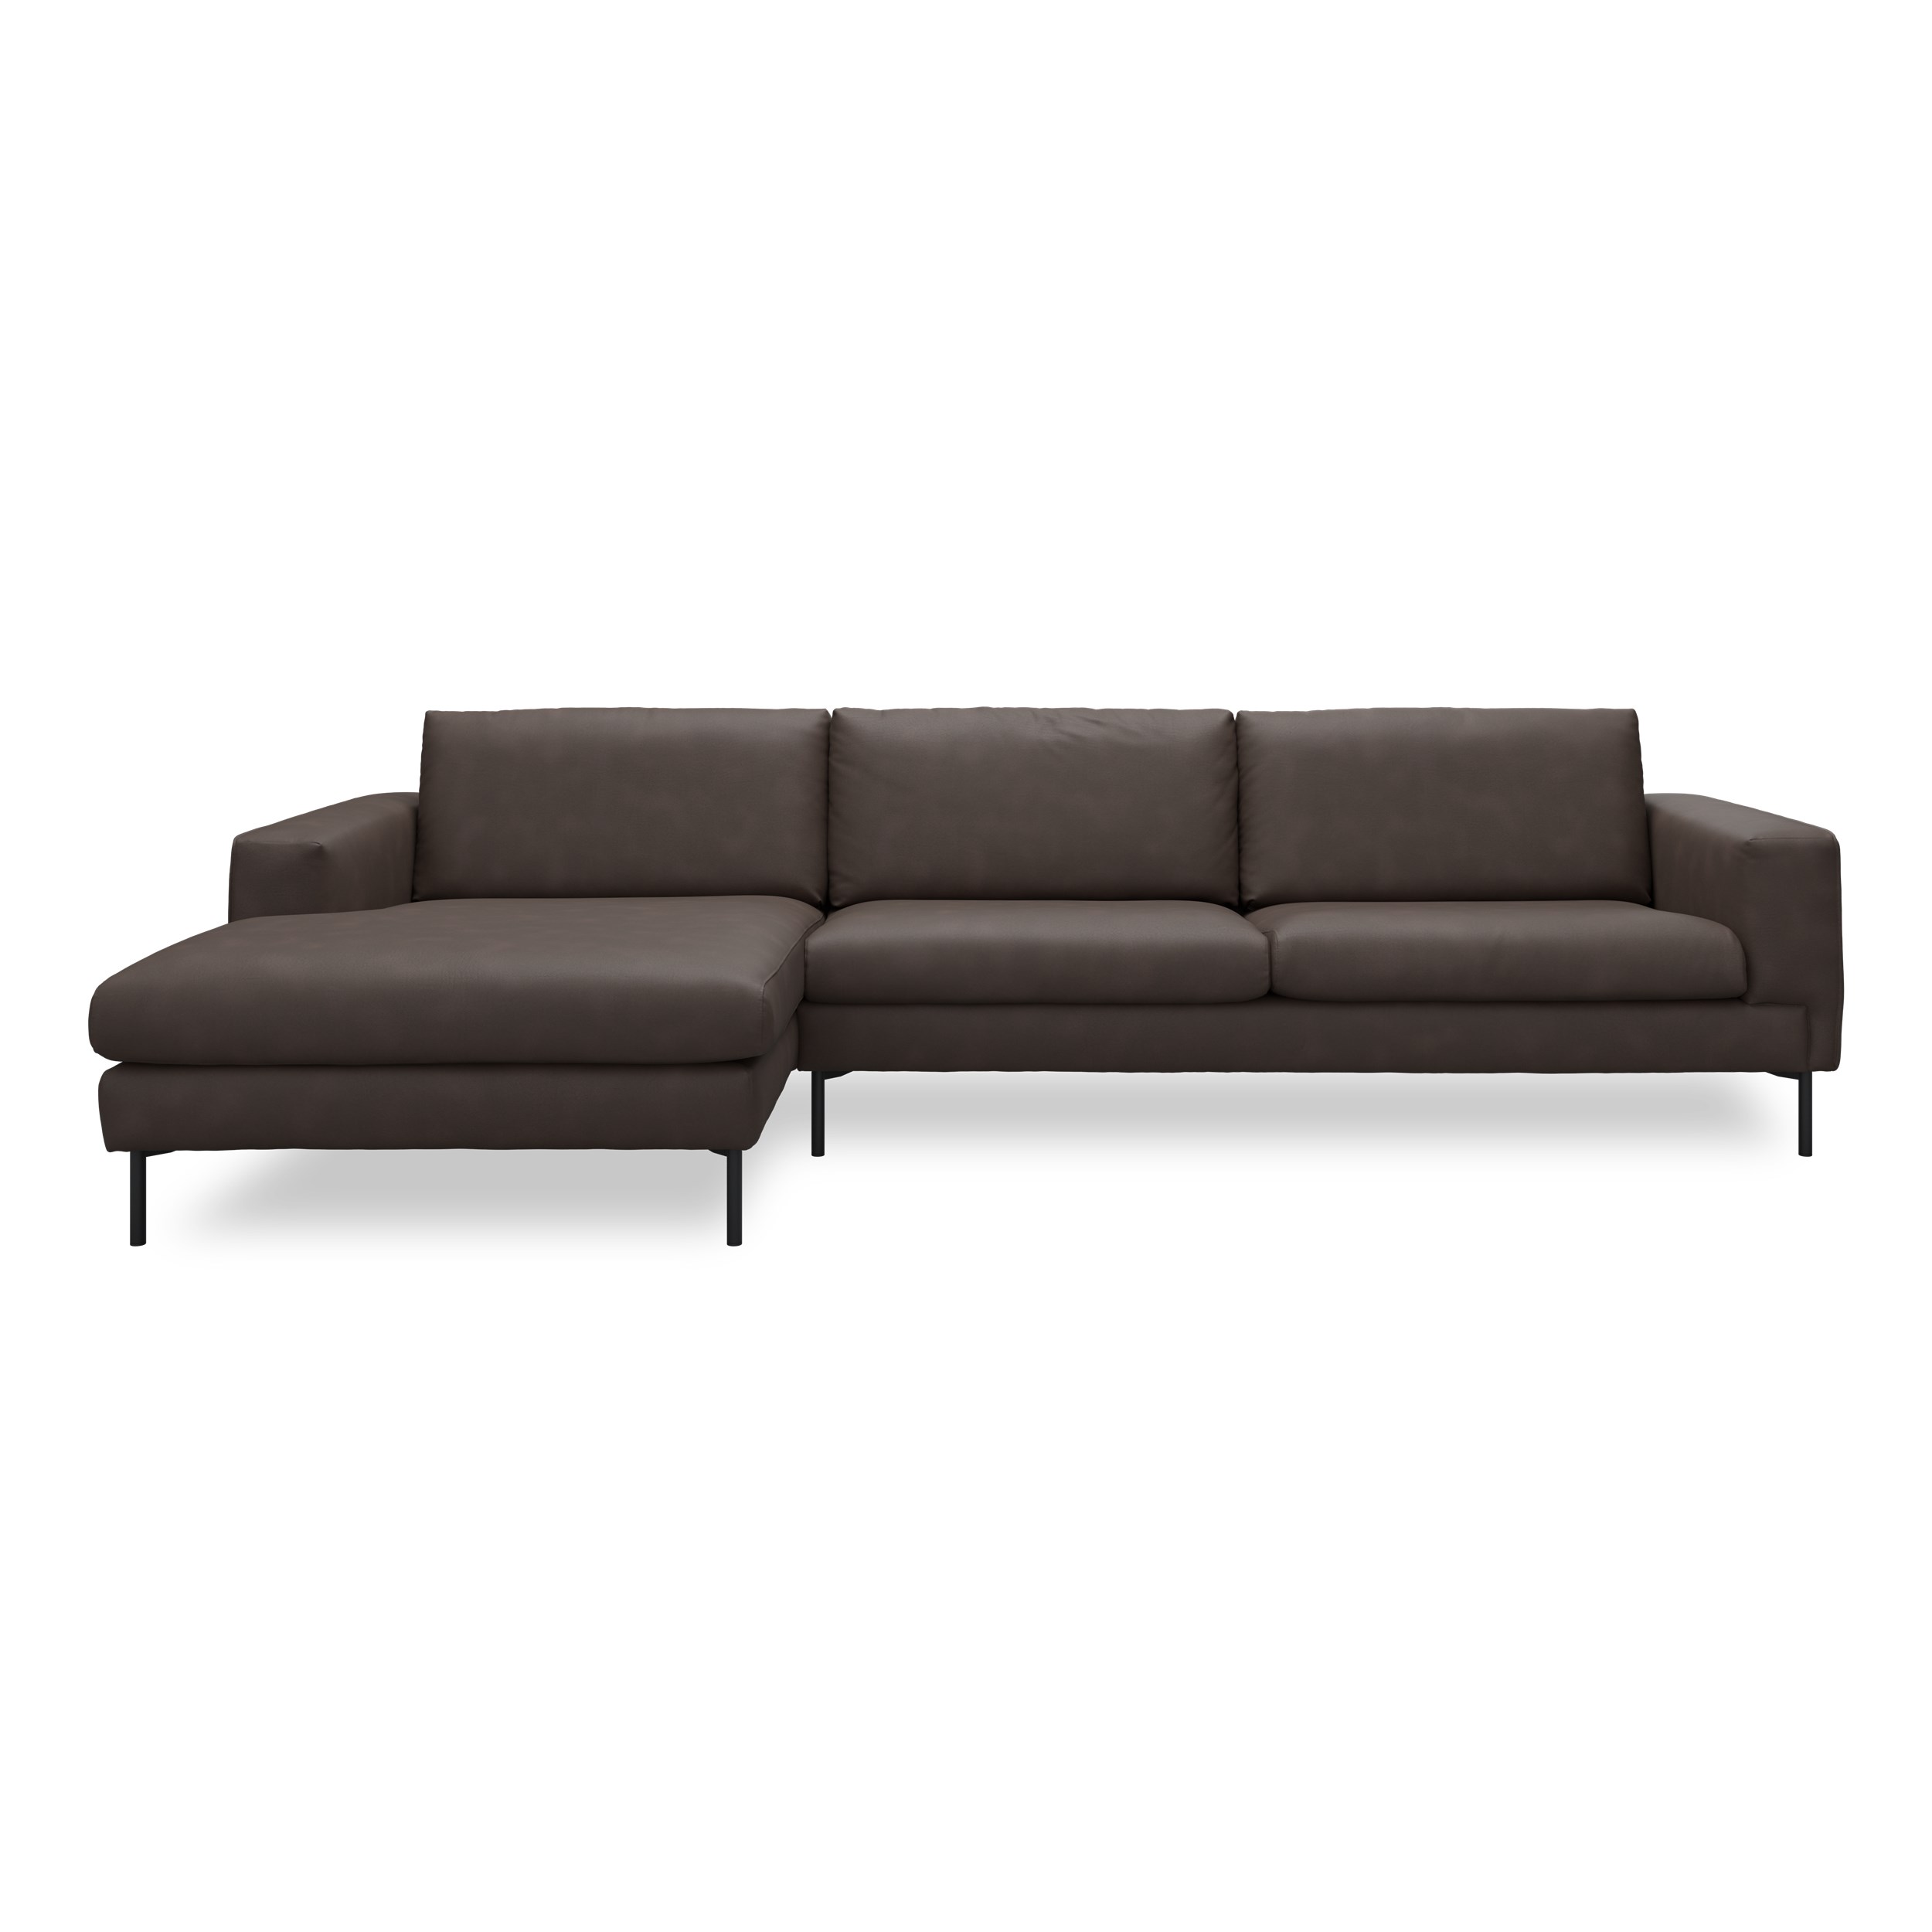 Nyland venstrevendt sofa med chaiselong - Kentucky 1 earth bonded læder, Ben no. 145 i sortlakeret metal og S: Pocketfjedre/koldskum R: Koldskum med fiberfyld